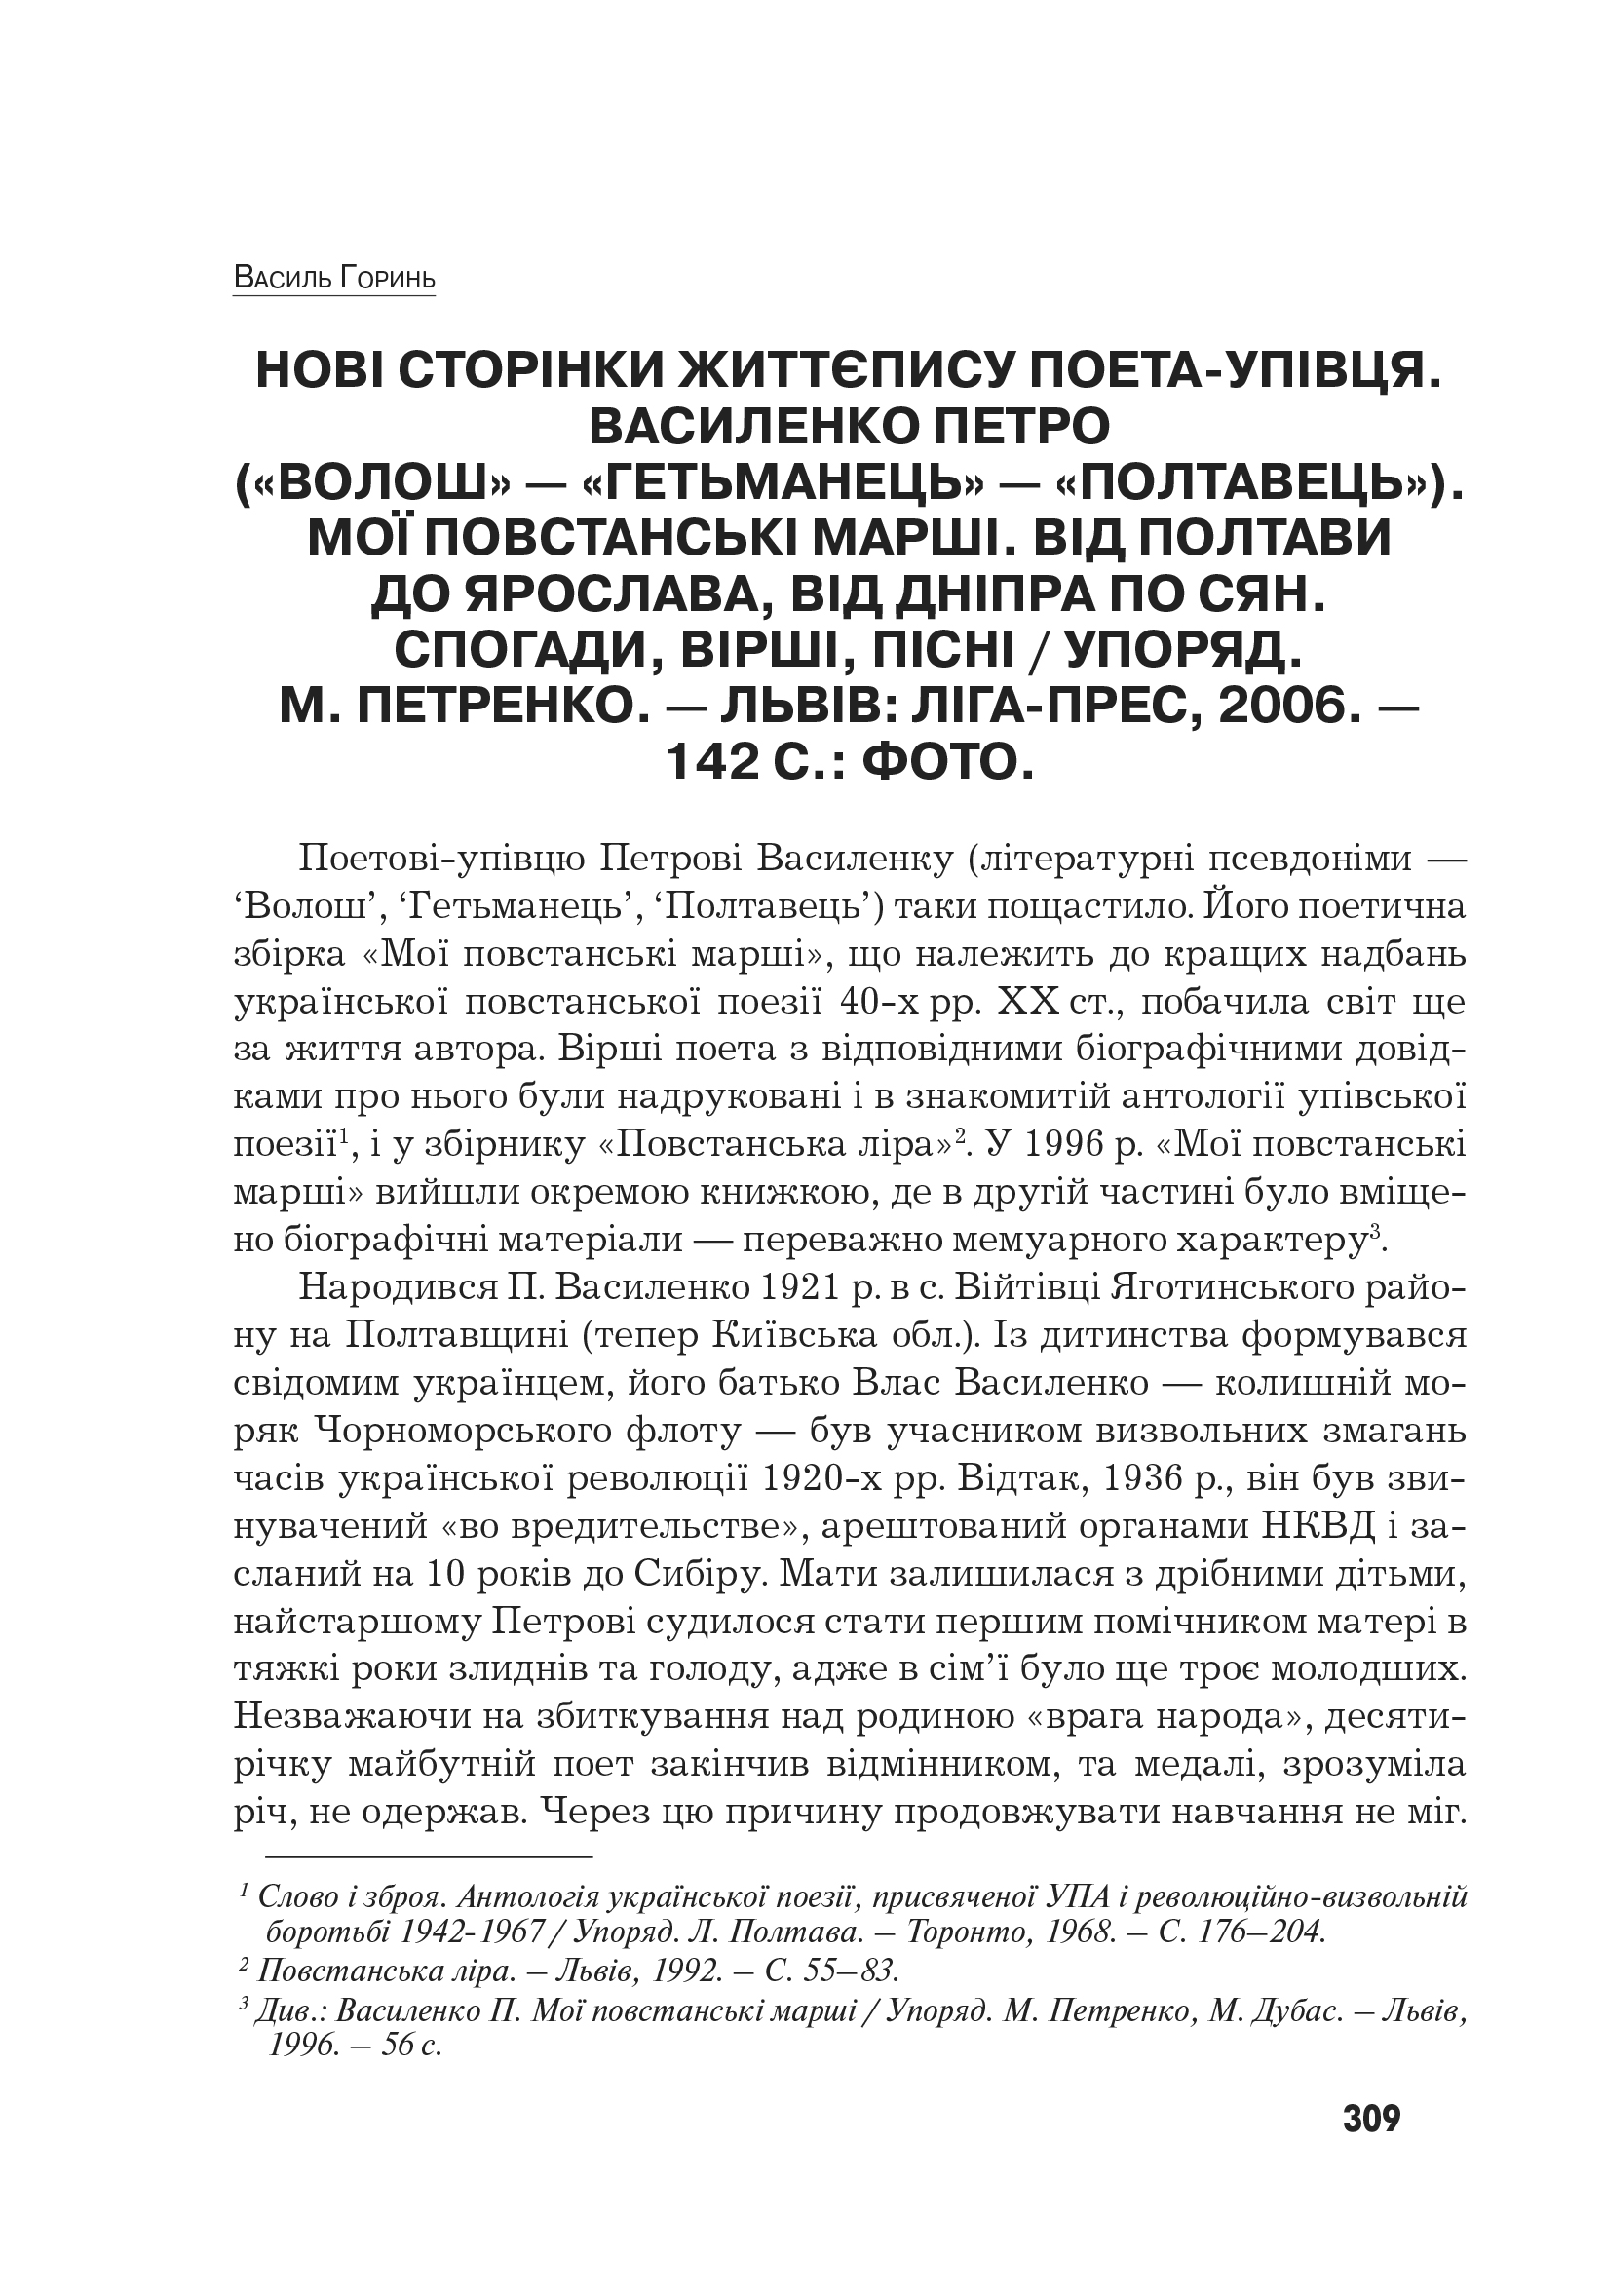 Український визвольний рух №9, ст. 309 - 315